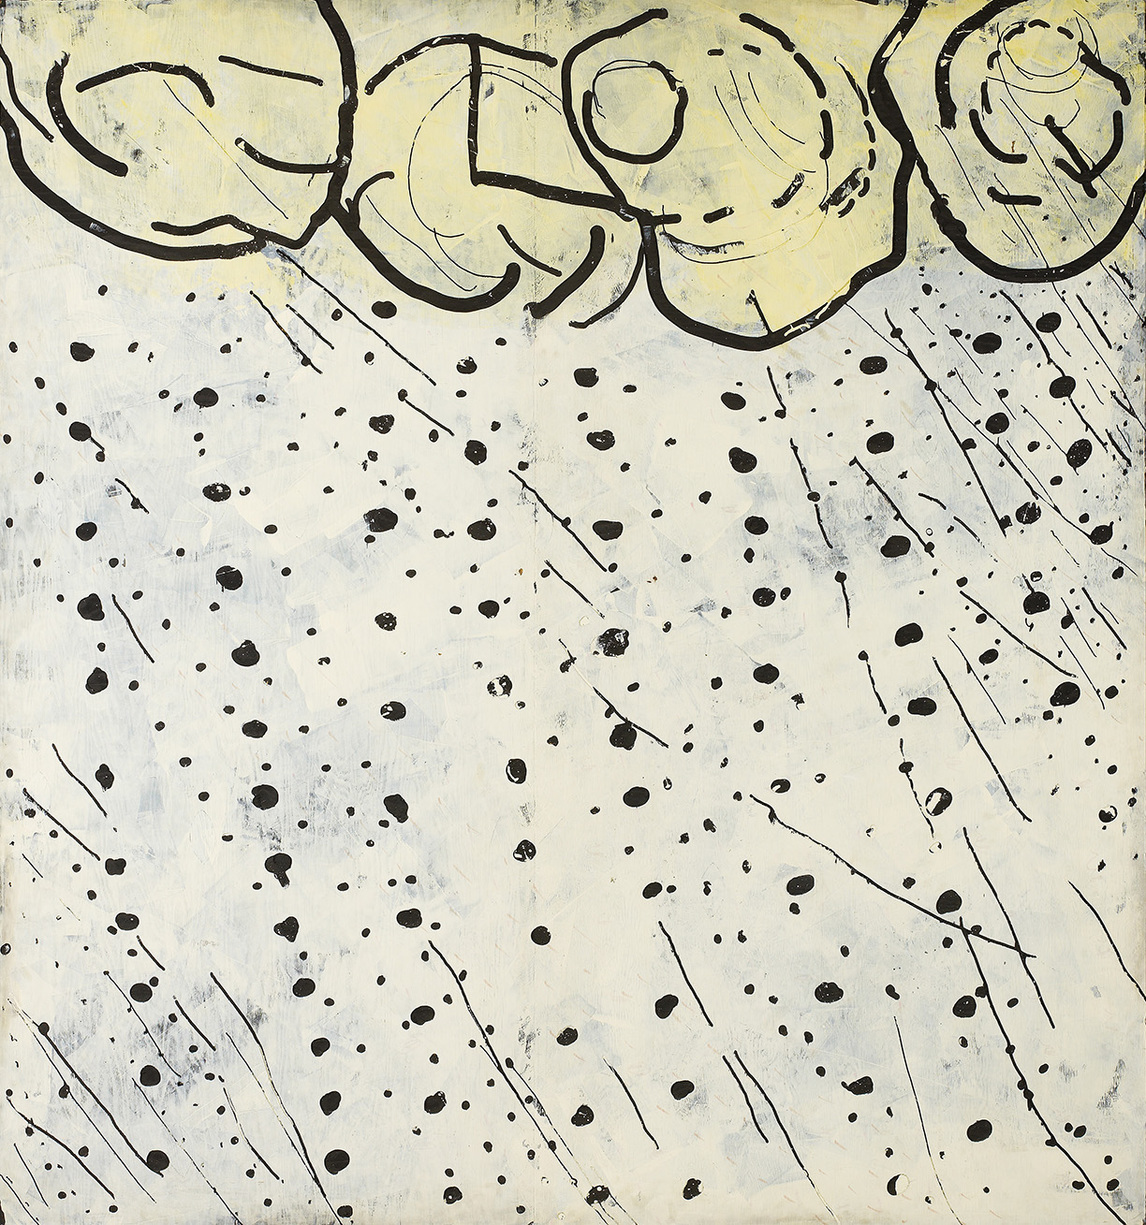 Precipitation, 1973, by Paterson Ewen